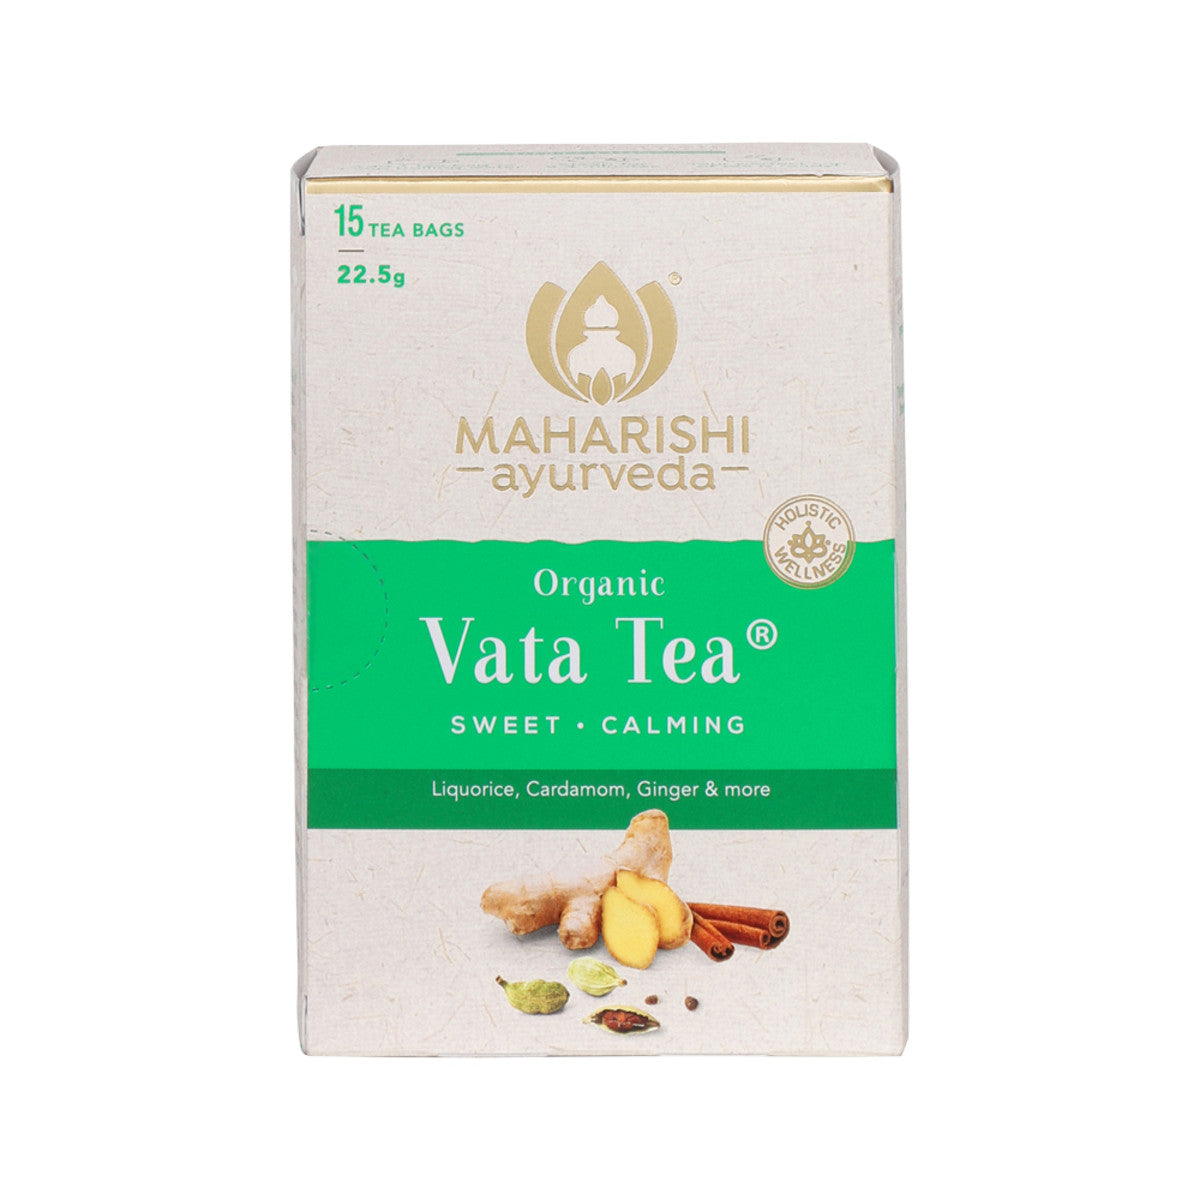 Maharishi Ayurveda - Organic Vata Tea